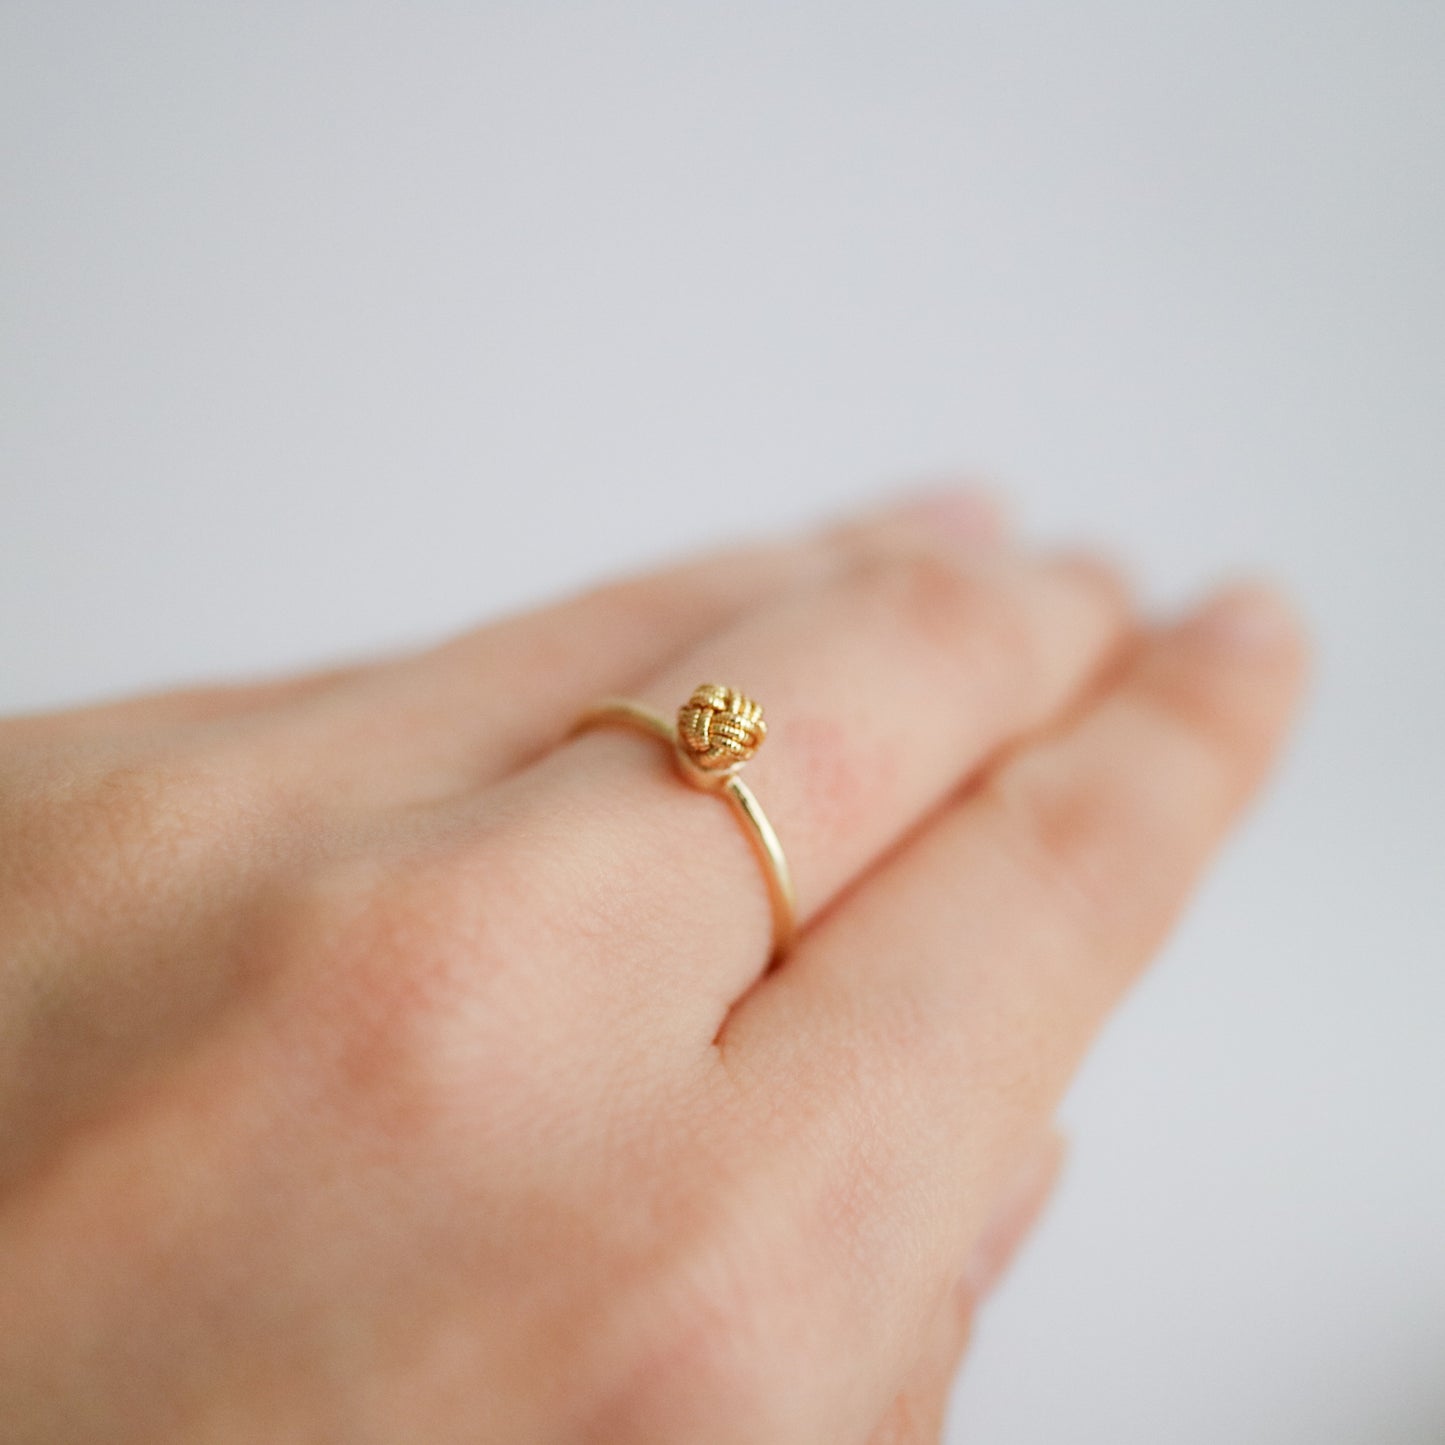 Awaji single pearl ring